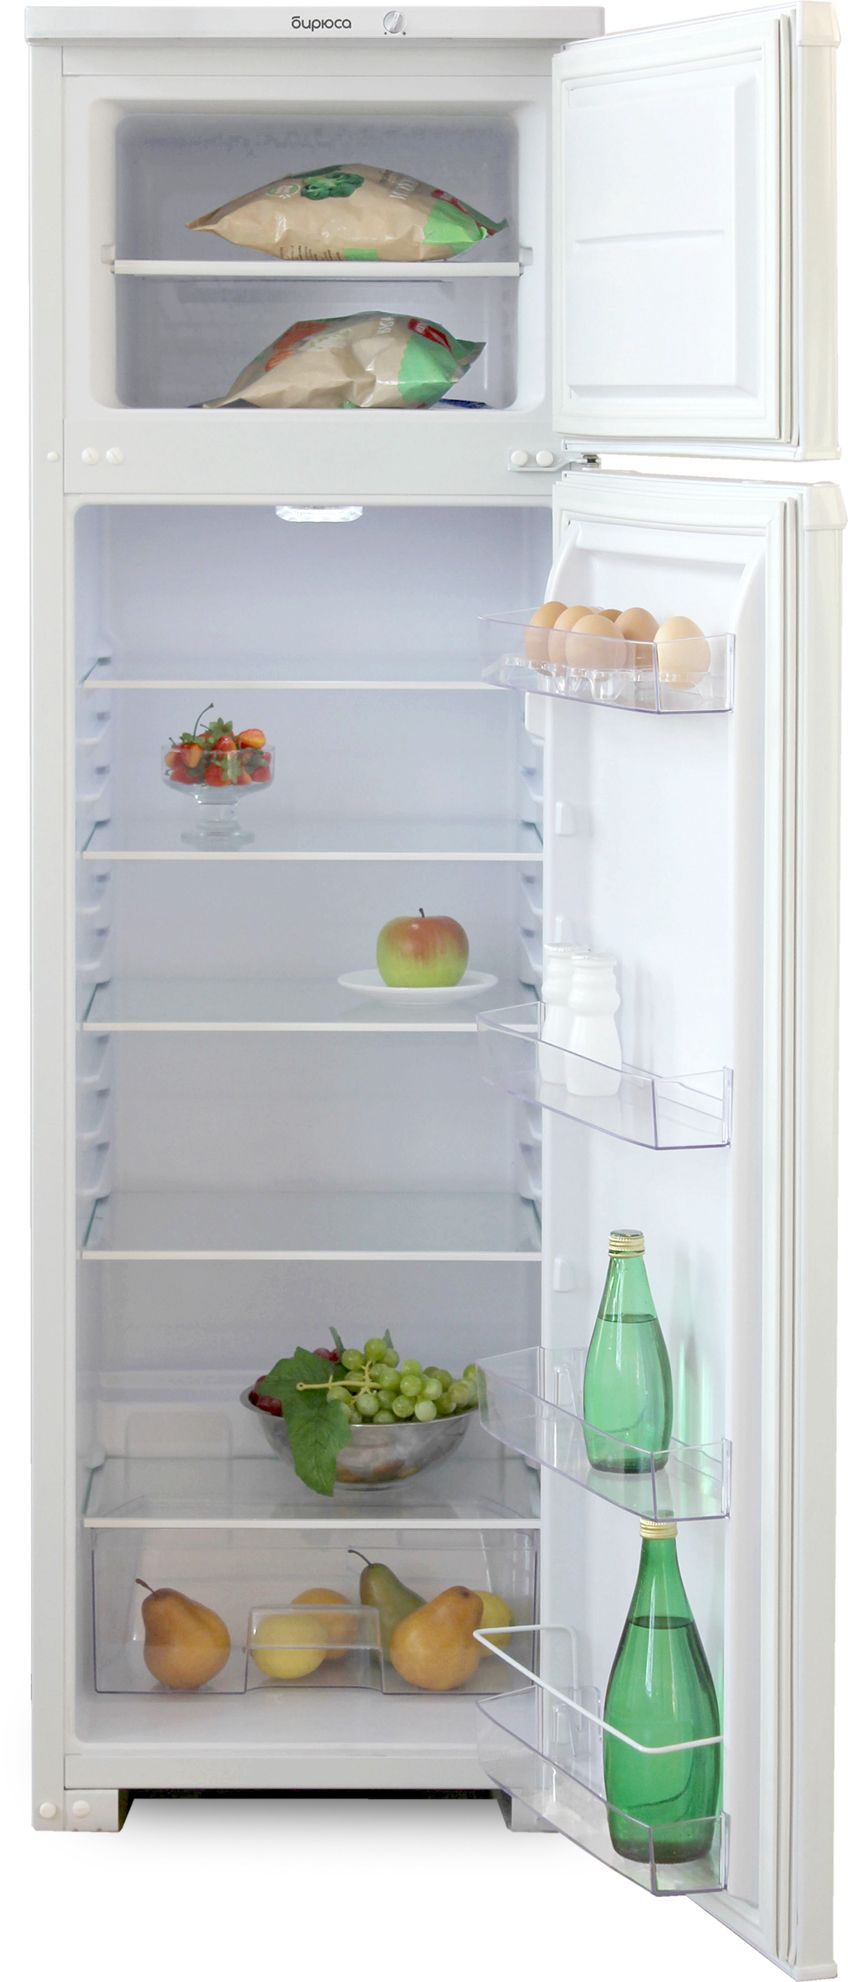 холодильник бирюса 124, купить в Красноярске холодильник бирюса 124,  купить в Красноярске дешево холодильник бирюса 124, купить в Красноярске минимальной цене холодильник бирюса 124